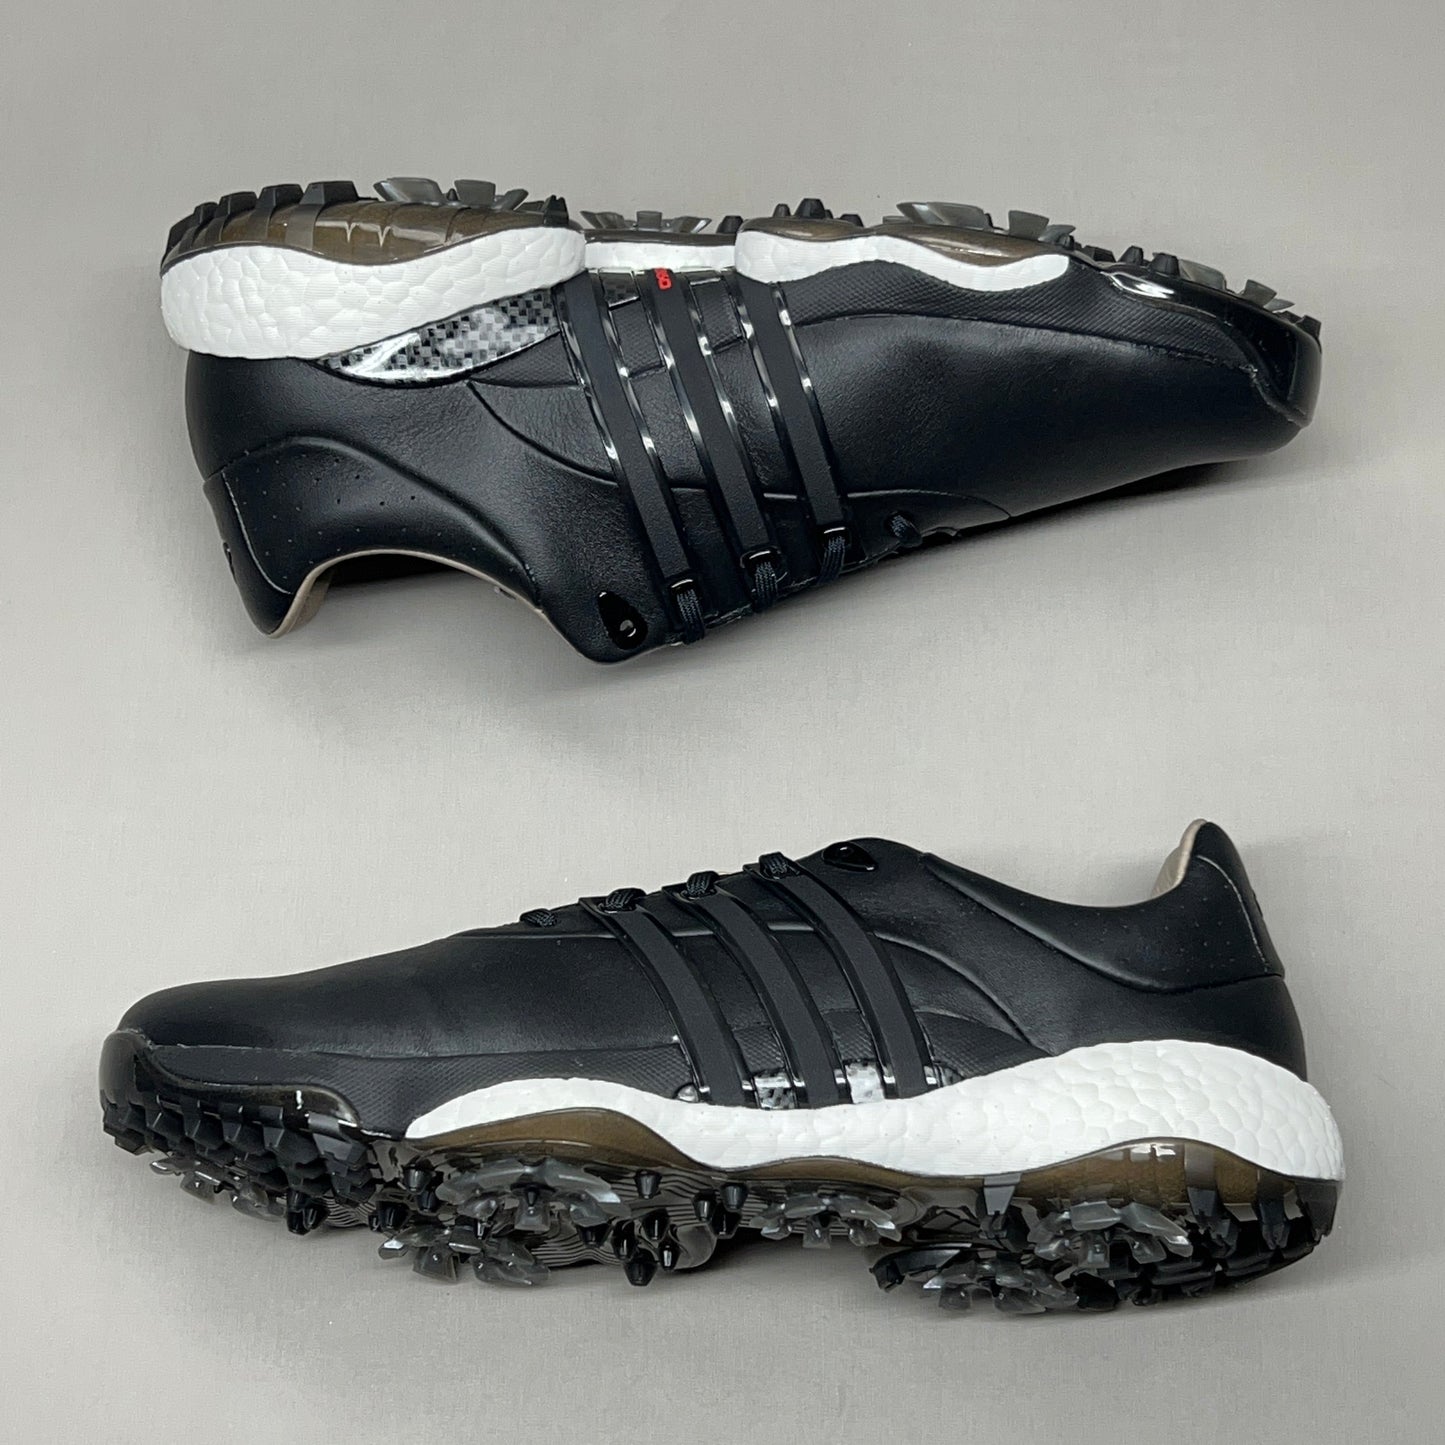 ADIDAS Golf Shoes TOUR360 22 Leather Men's Sz 7.5 Black / Iron Metallic GZ3158 (New)